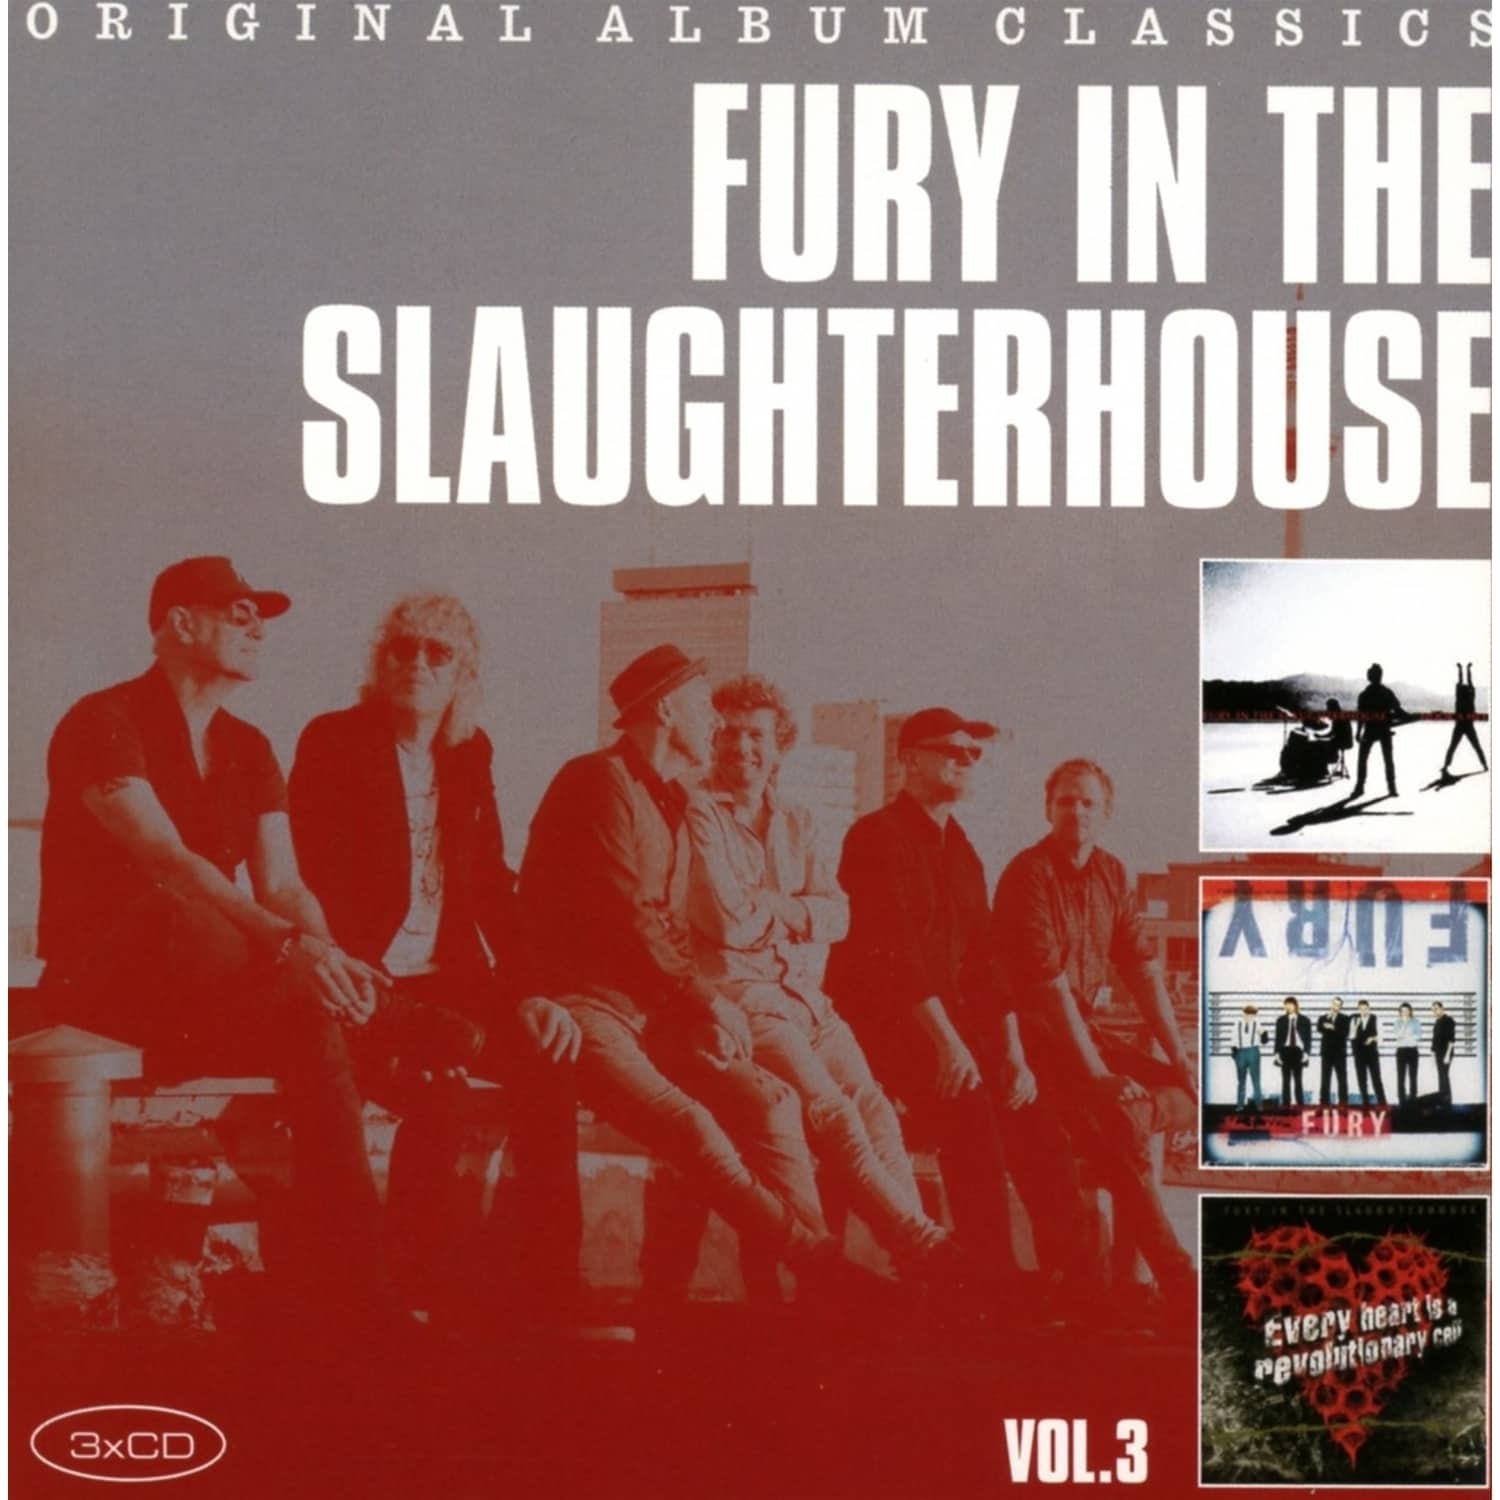 Fury In The Slaughterhouse - ORIGINAL ALBUM CLASSICS VOL.3 